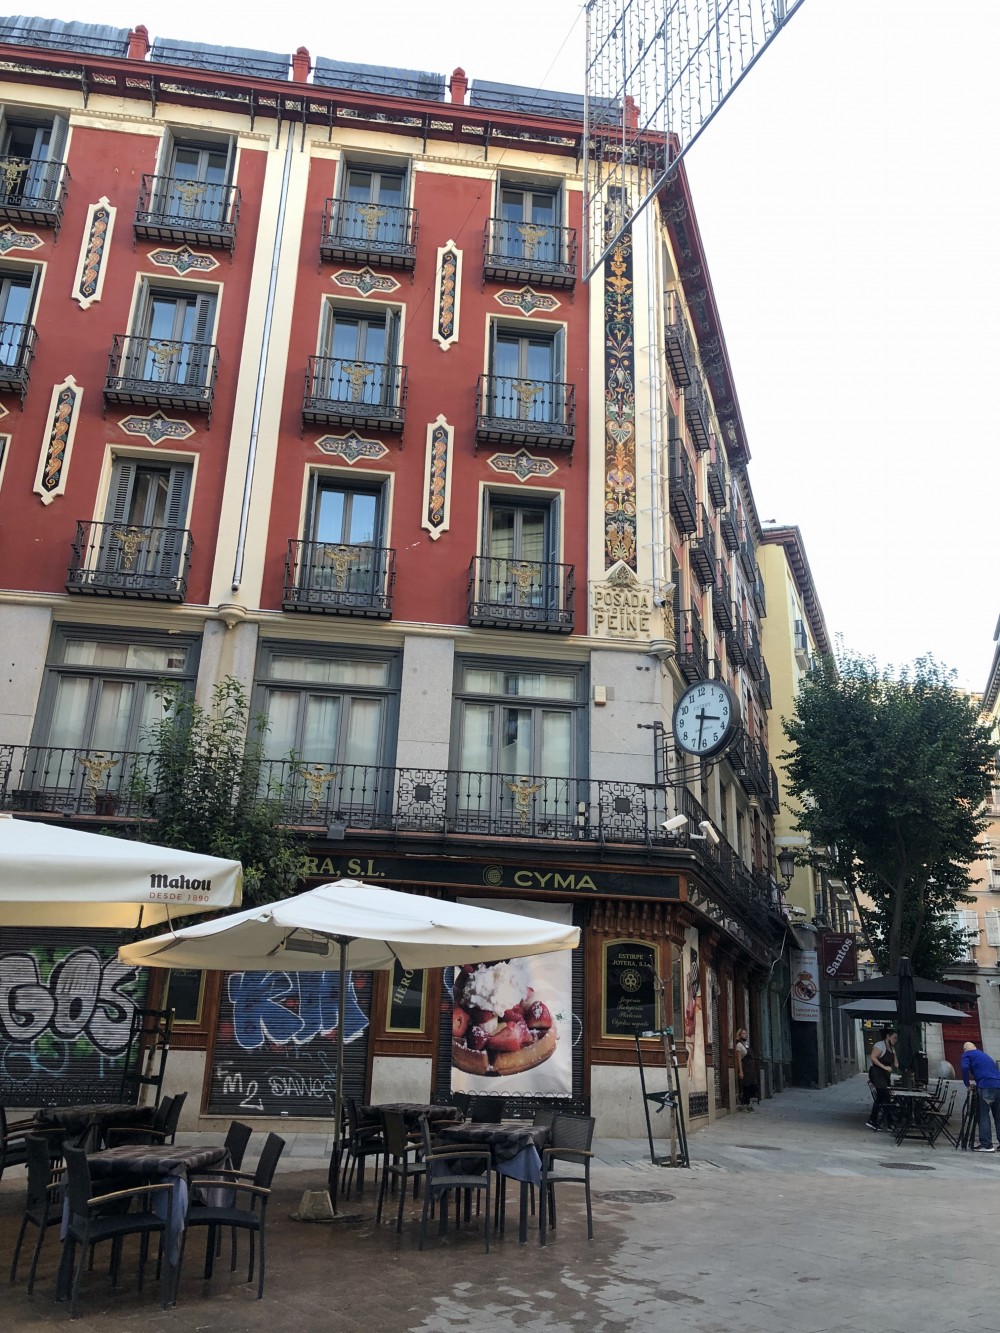 Petit Palace Posada del Peine el hotel más antiguo de España  My Guia de  Viajes